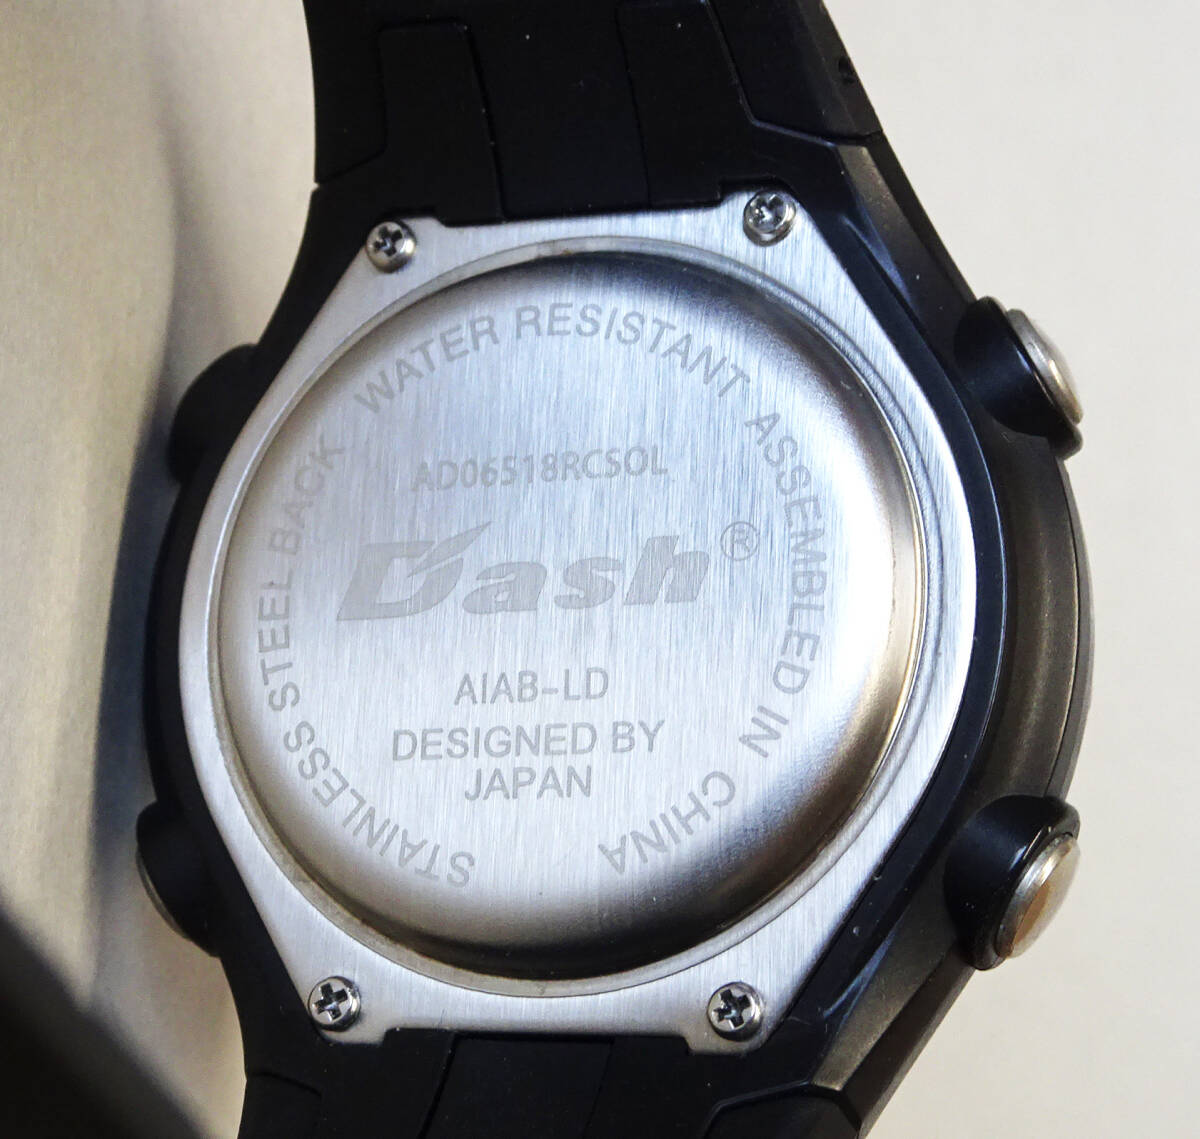 DASH　電波ソーラーウォッチ　デジタル腕時計　AD06518RCSOL _画像3